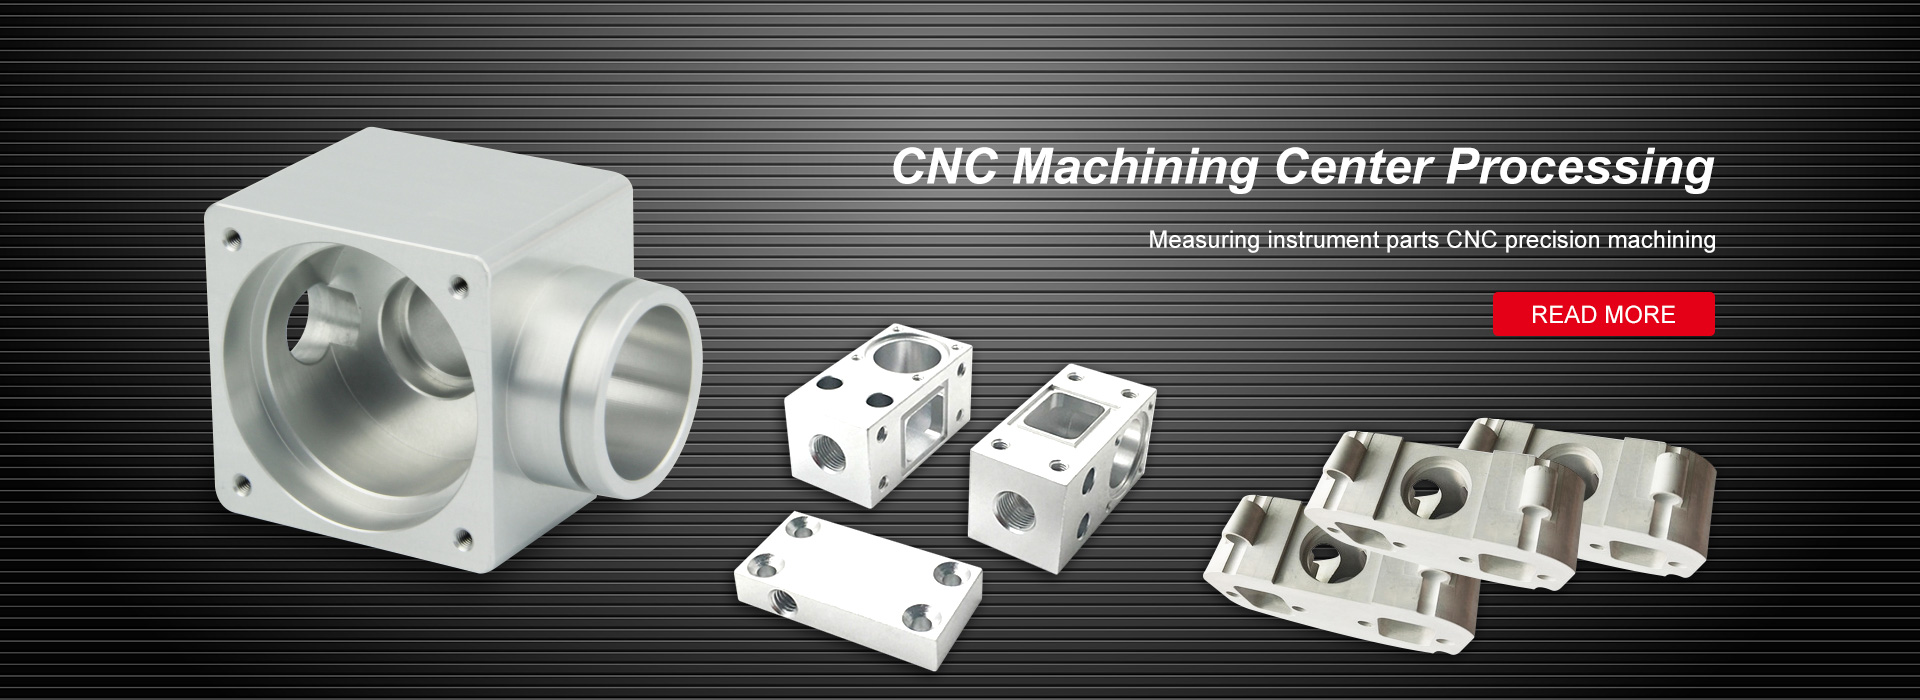 CNC-bewerkingscentrum verwerking